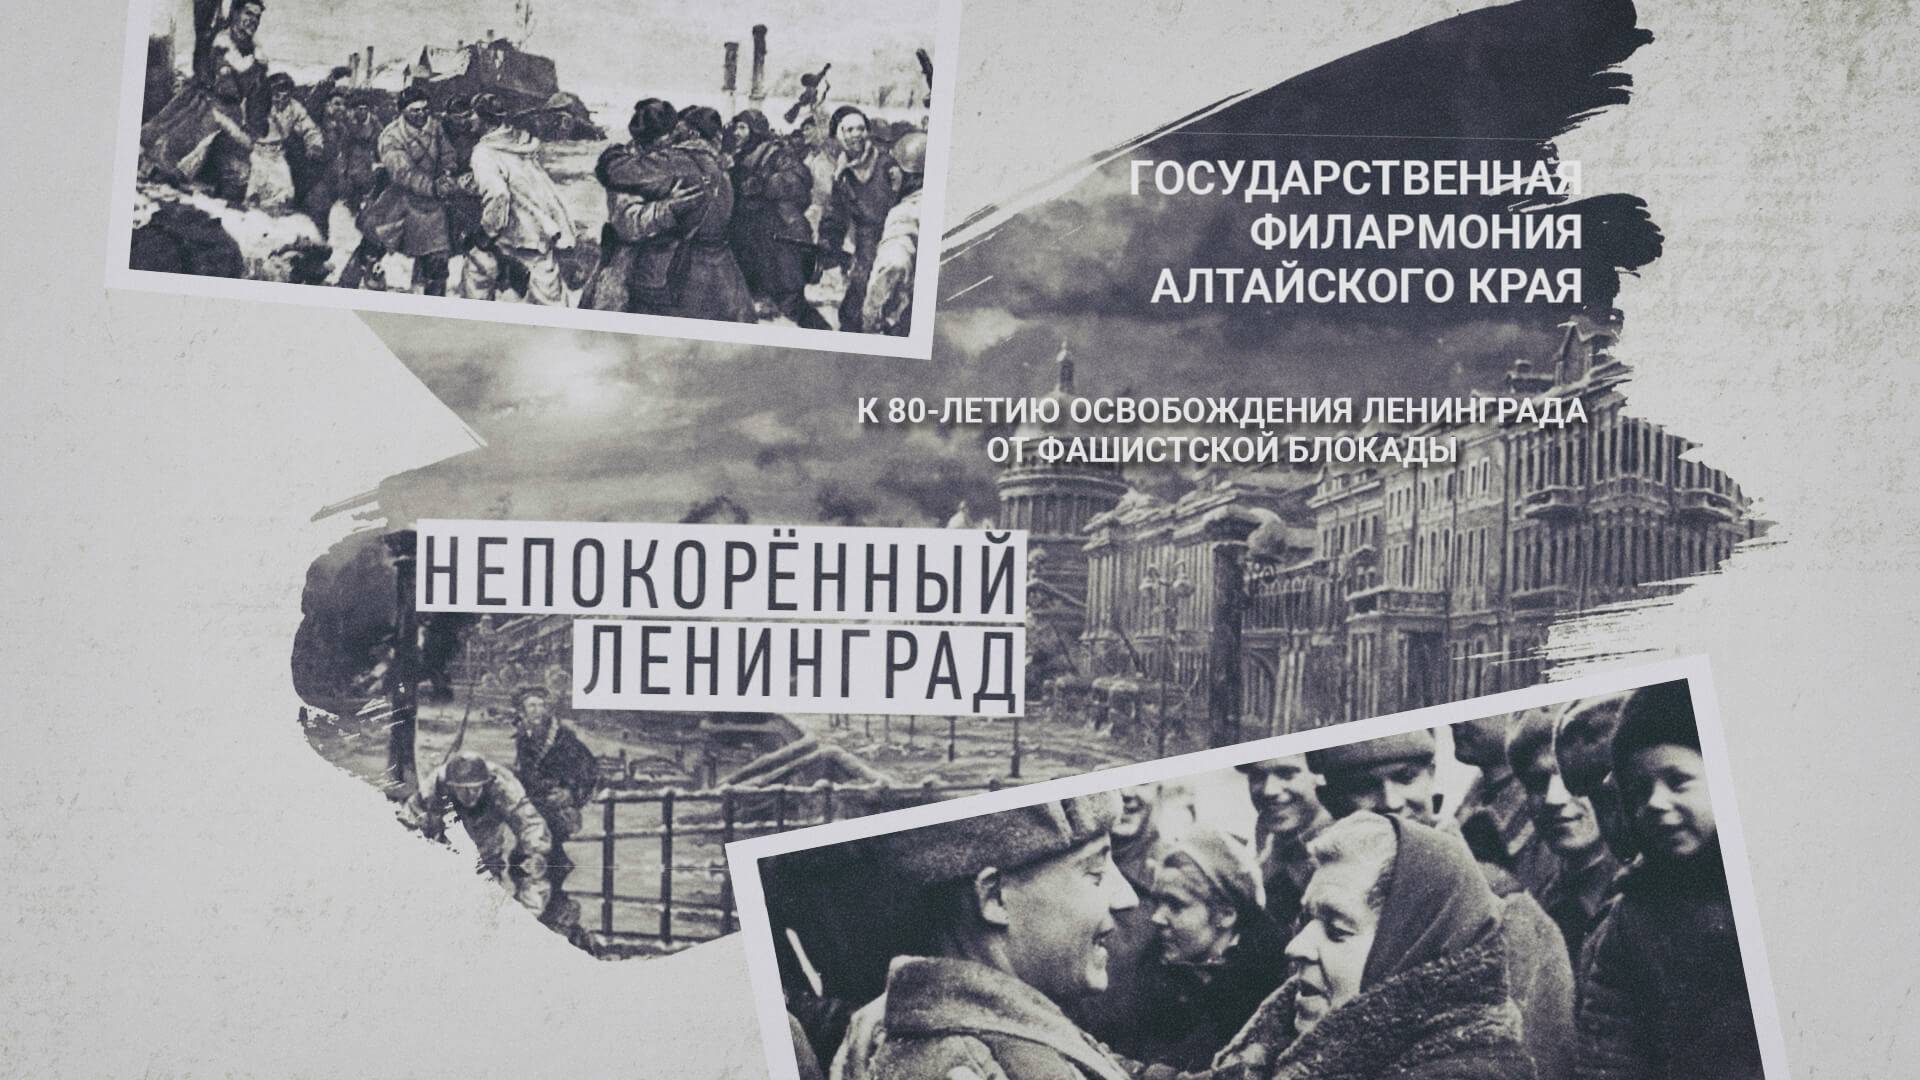 Непокорённый Ленинград: концерт в 80-летию освобождения Ленинграда от фашистской блокады